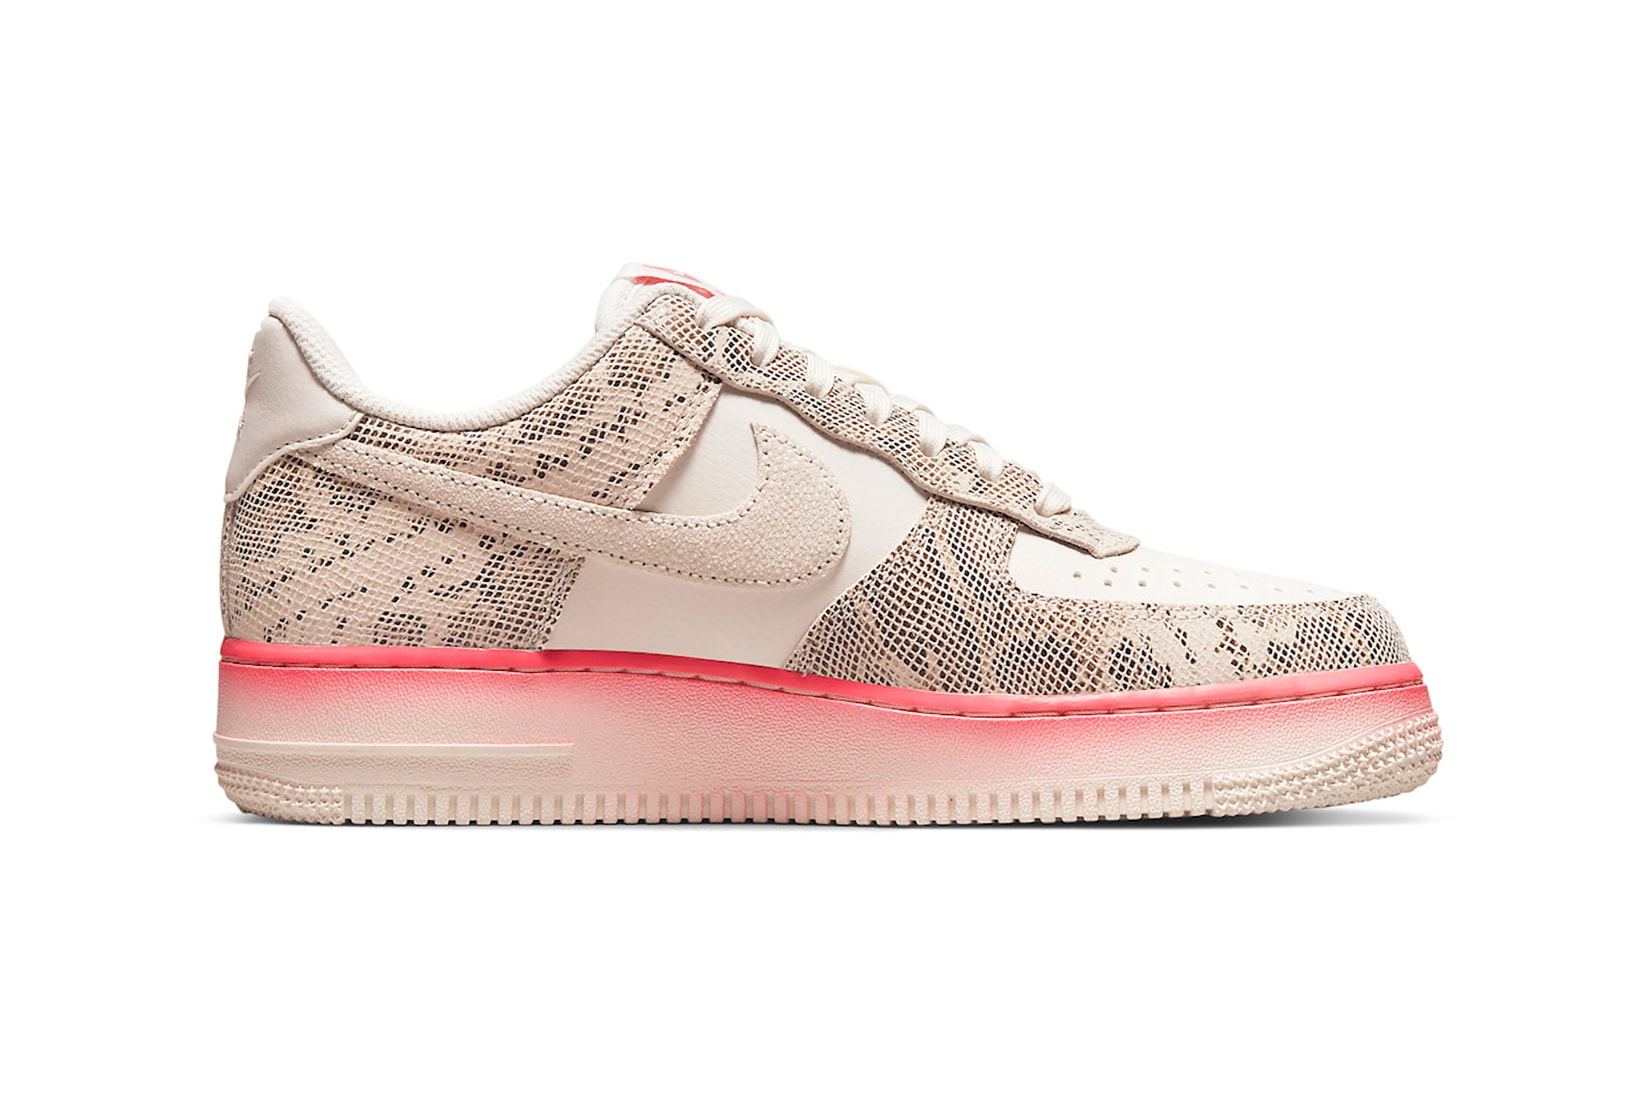 Nike Air Force 1 Low Pink Snakeskin Womens Sneakers Footwear Kicks Shoes Beige